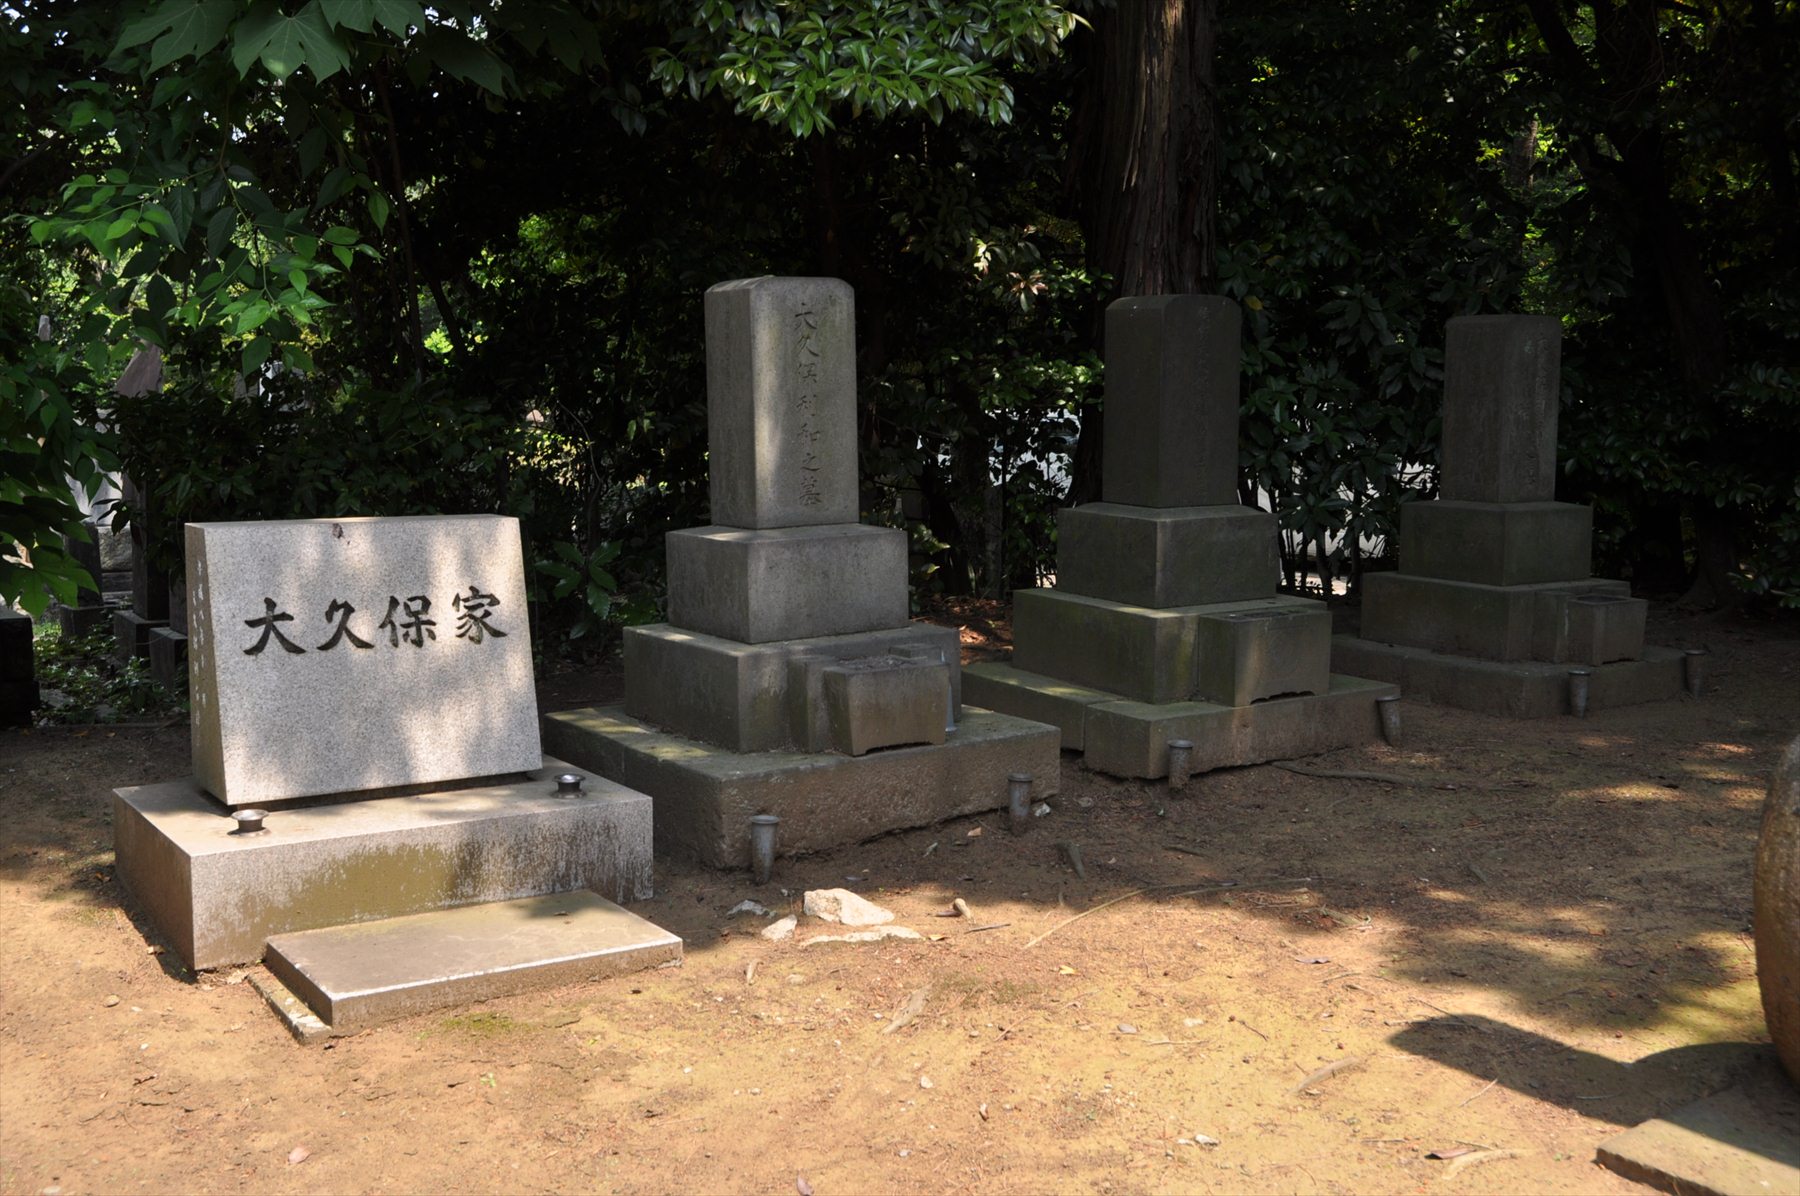 著名人 有名人の墓 大久保利通 東京都 青山霊園 霊園とお墓のはなし